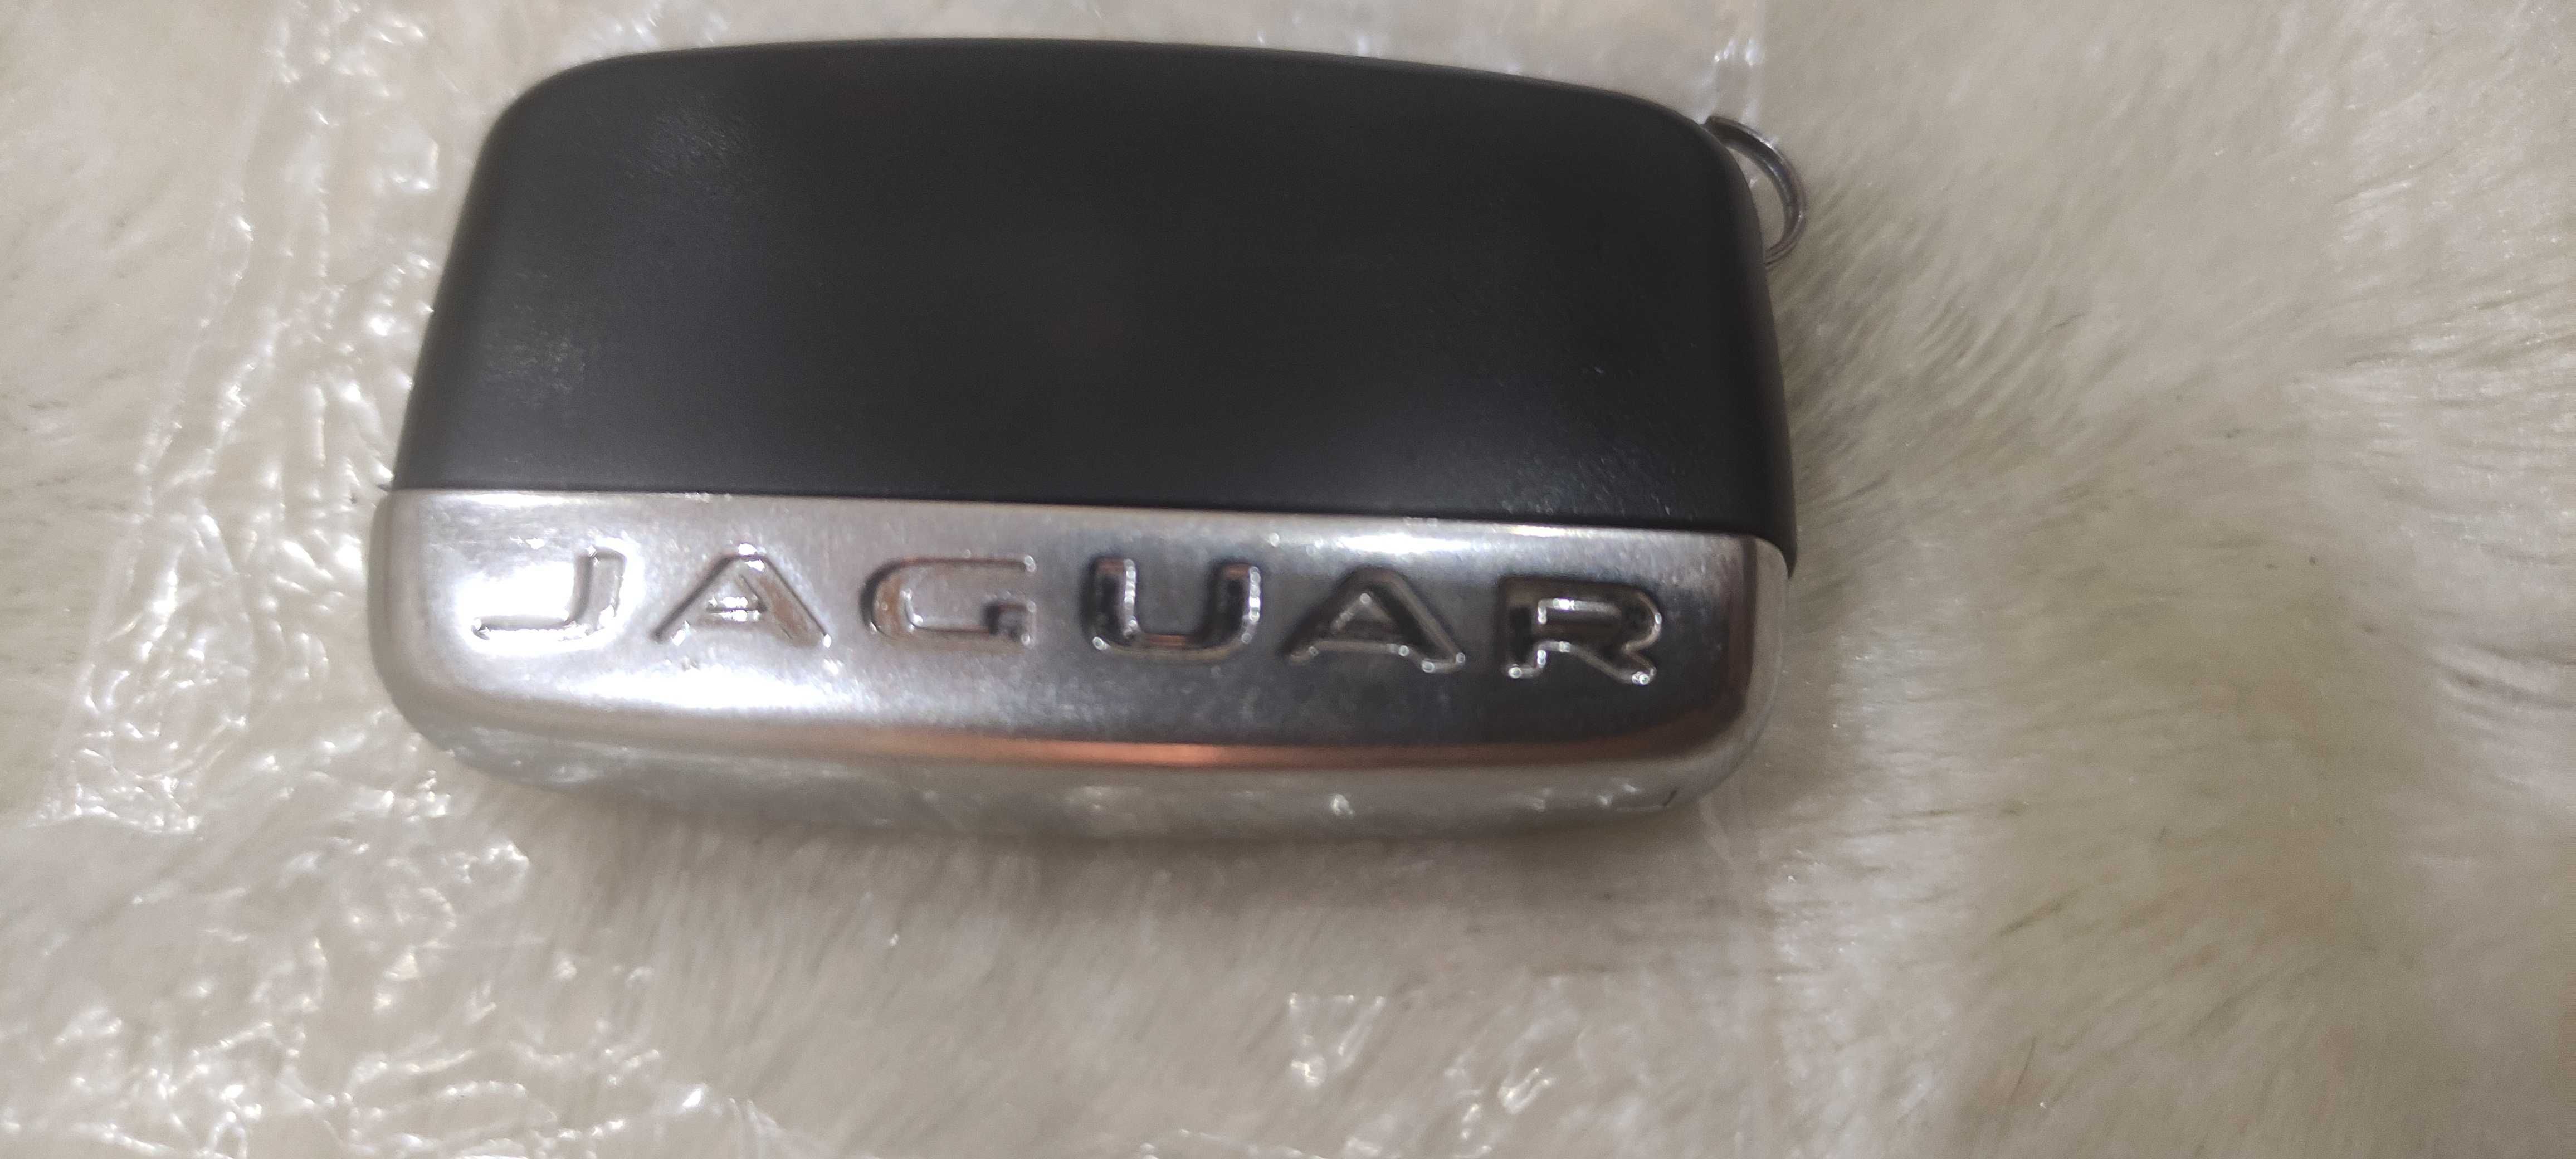 Корпус ключа Jaguar XF XE XJ F-pace e-pace монеты вазы колекцион